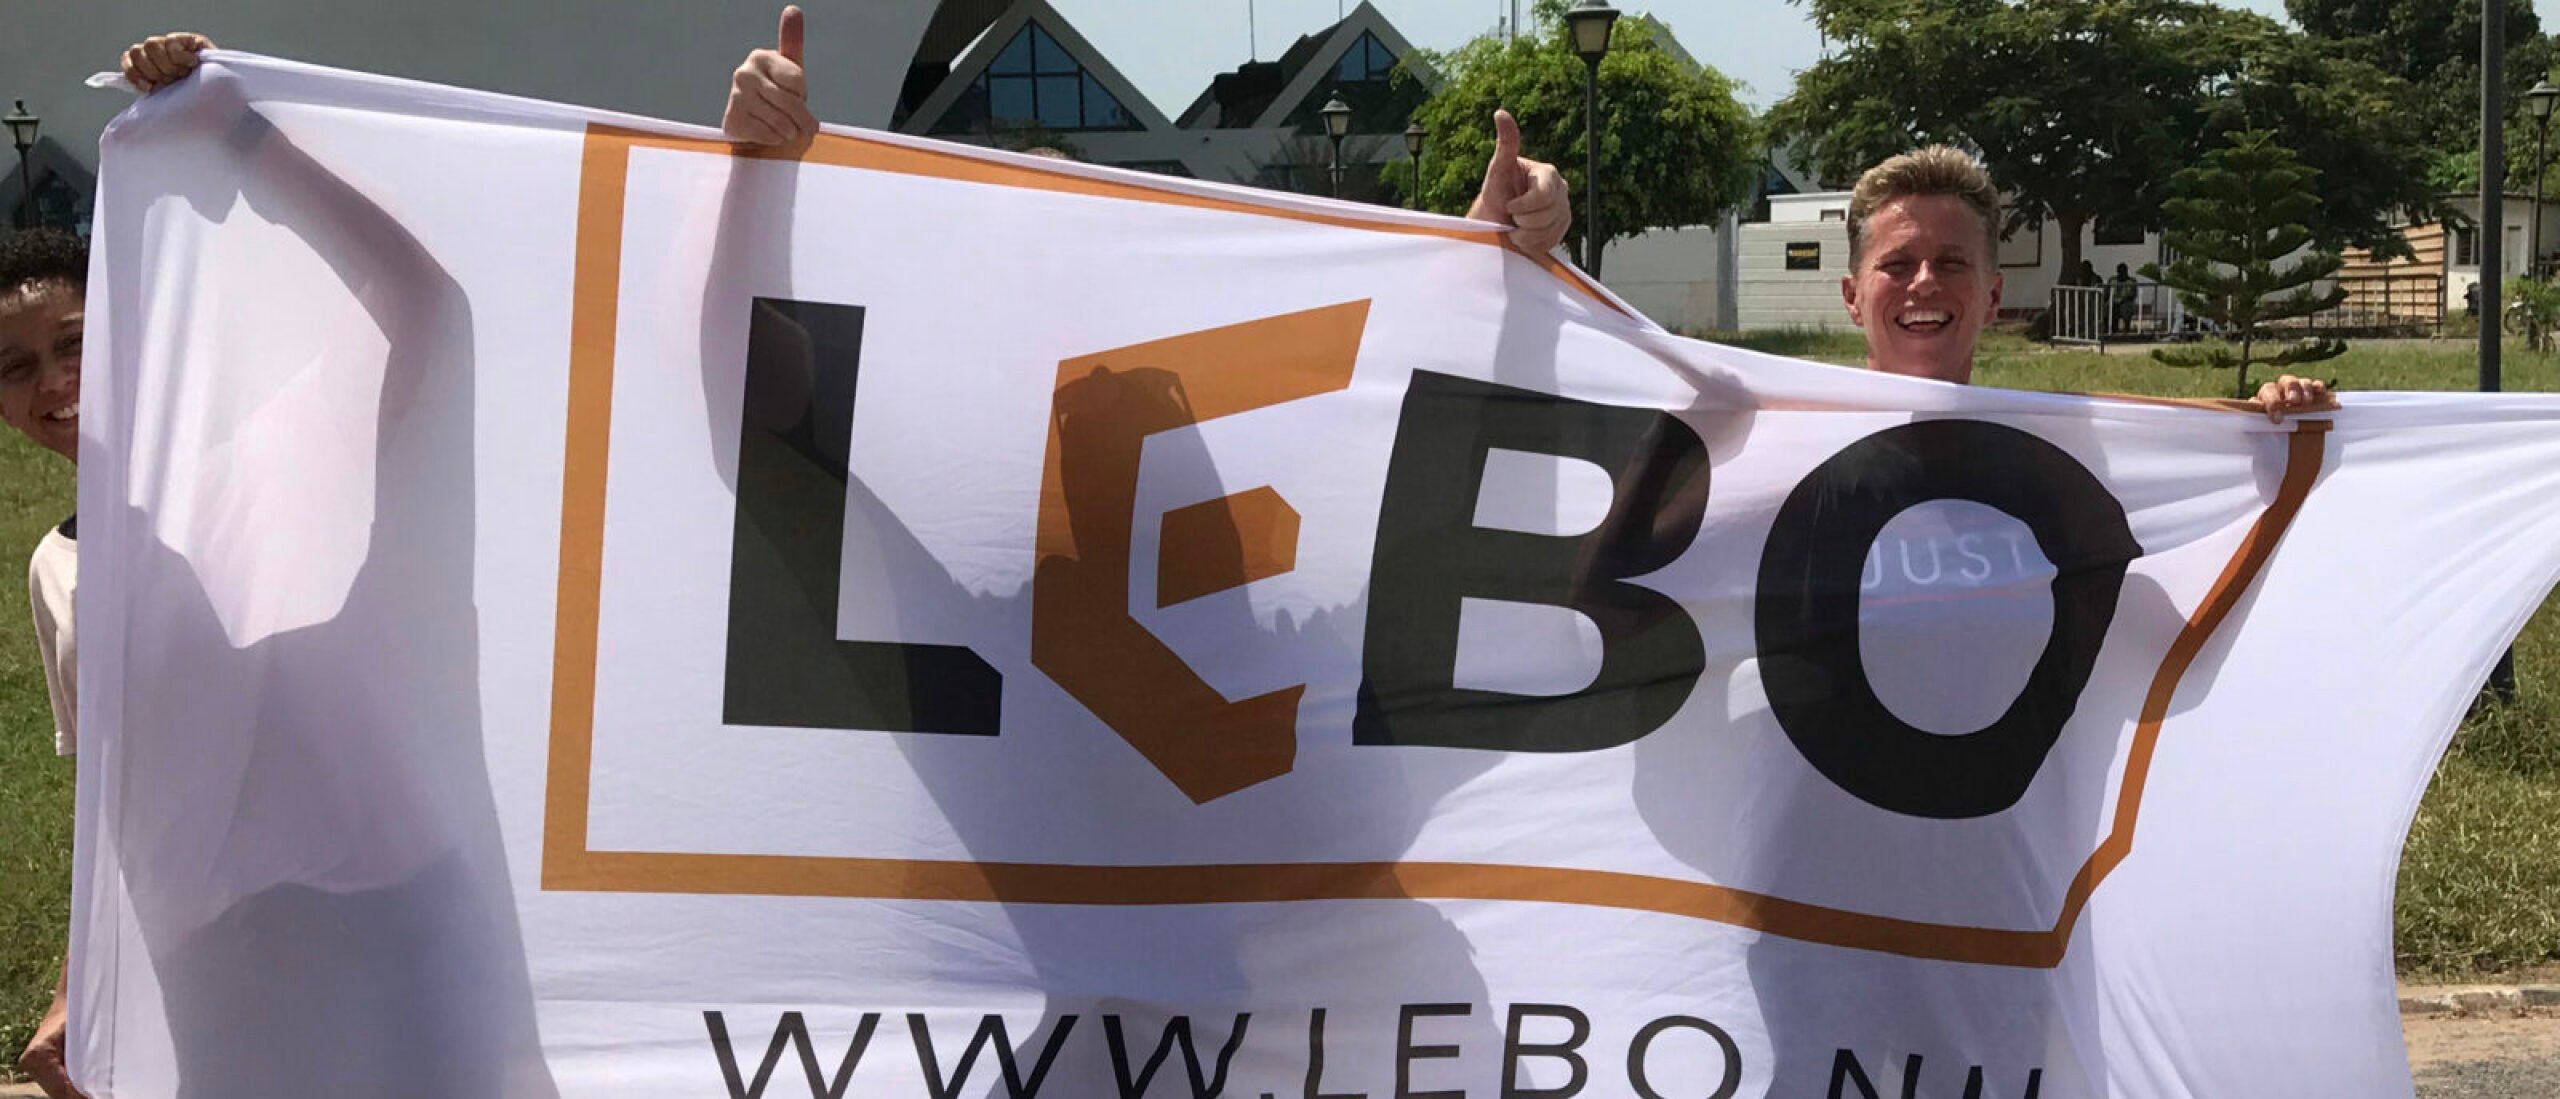 Hoofdsponsor LEBO Vastgoed doet geweldige donatie van € 2.500,-!